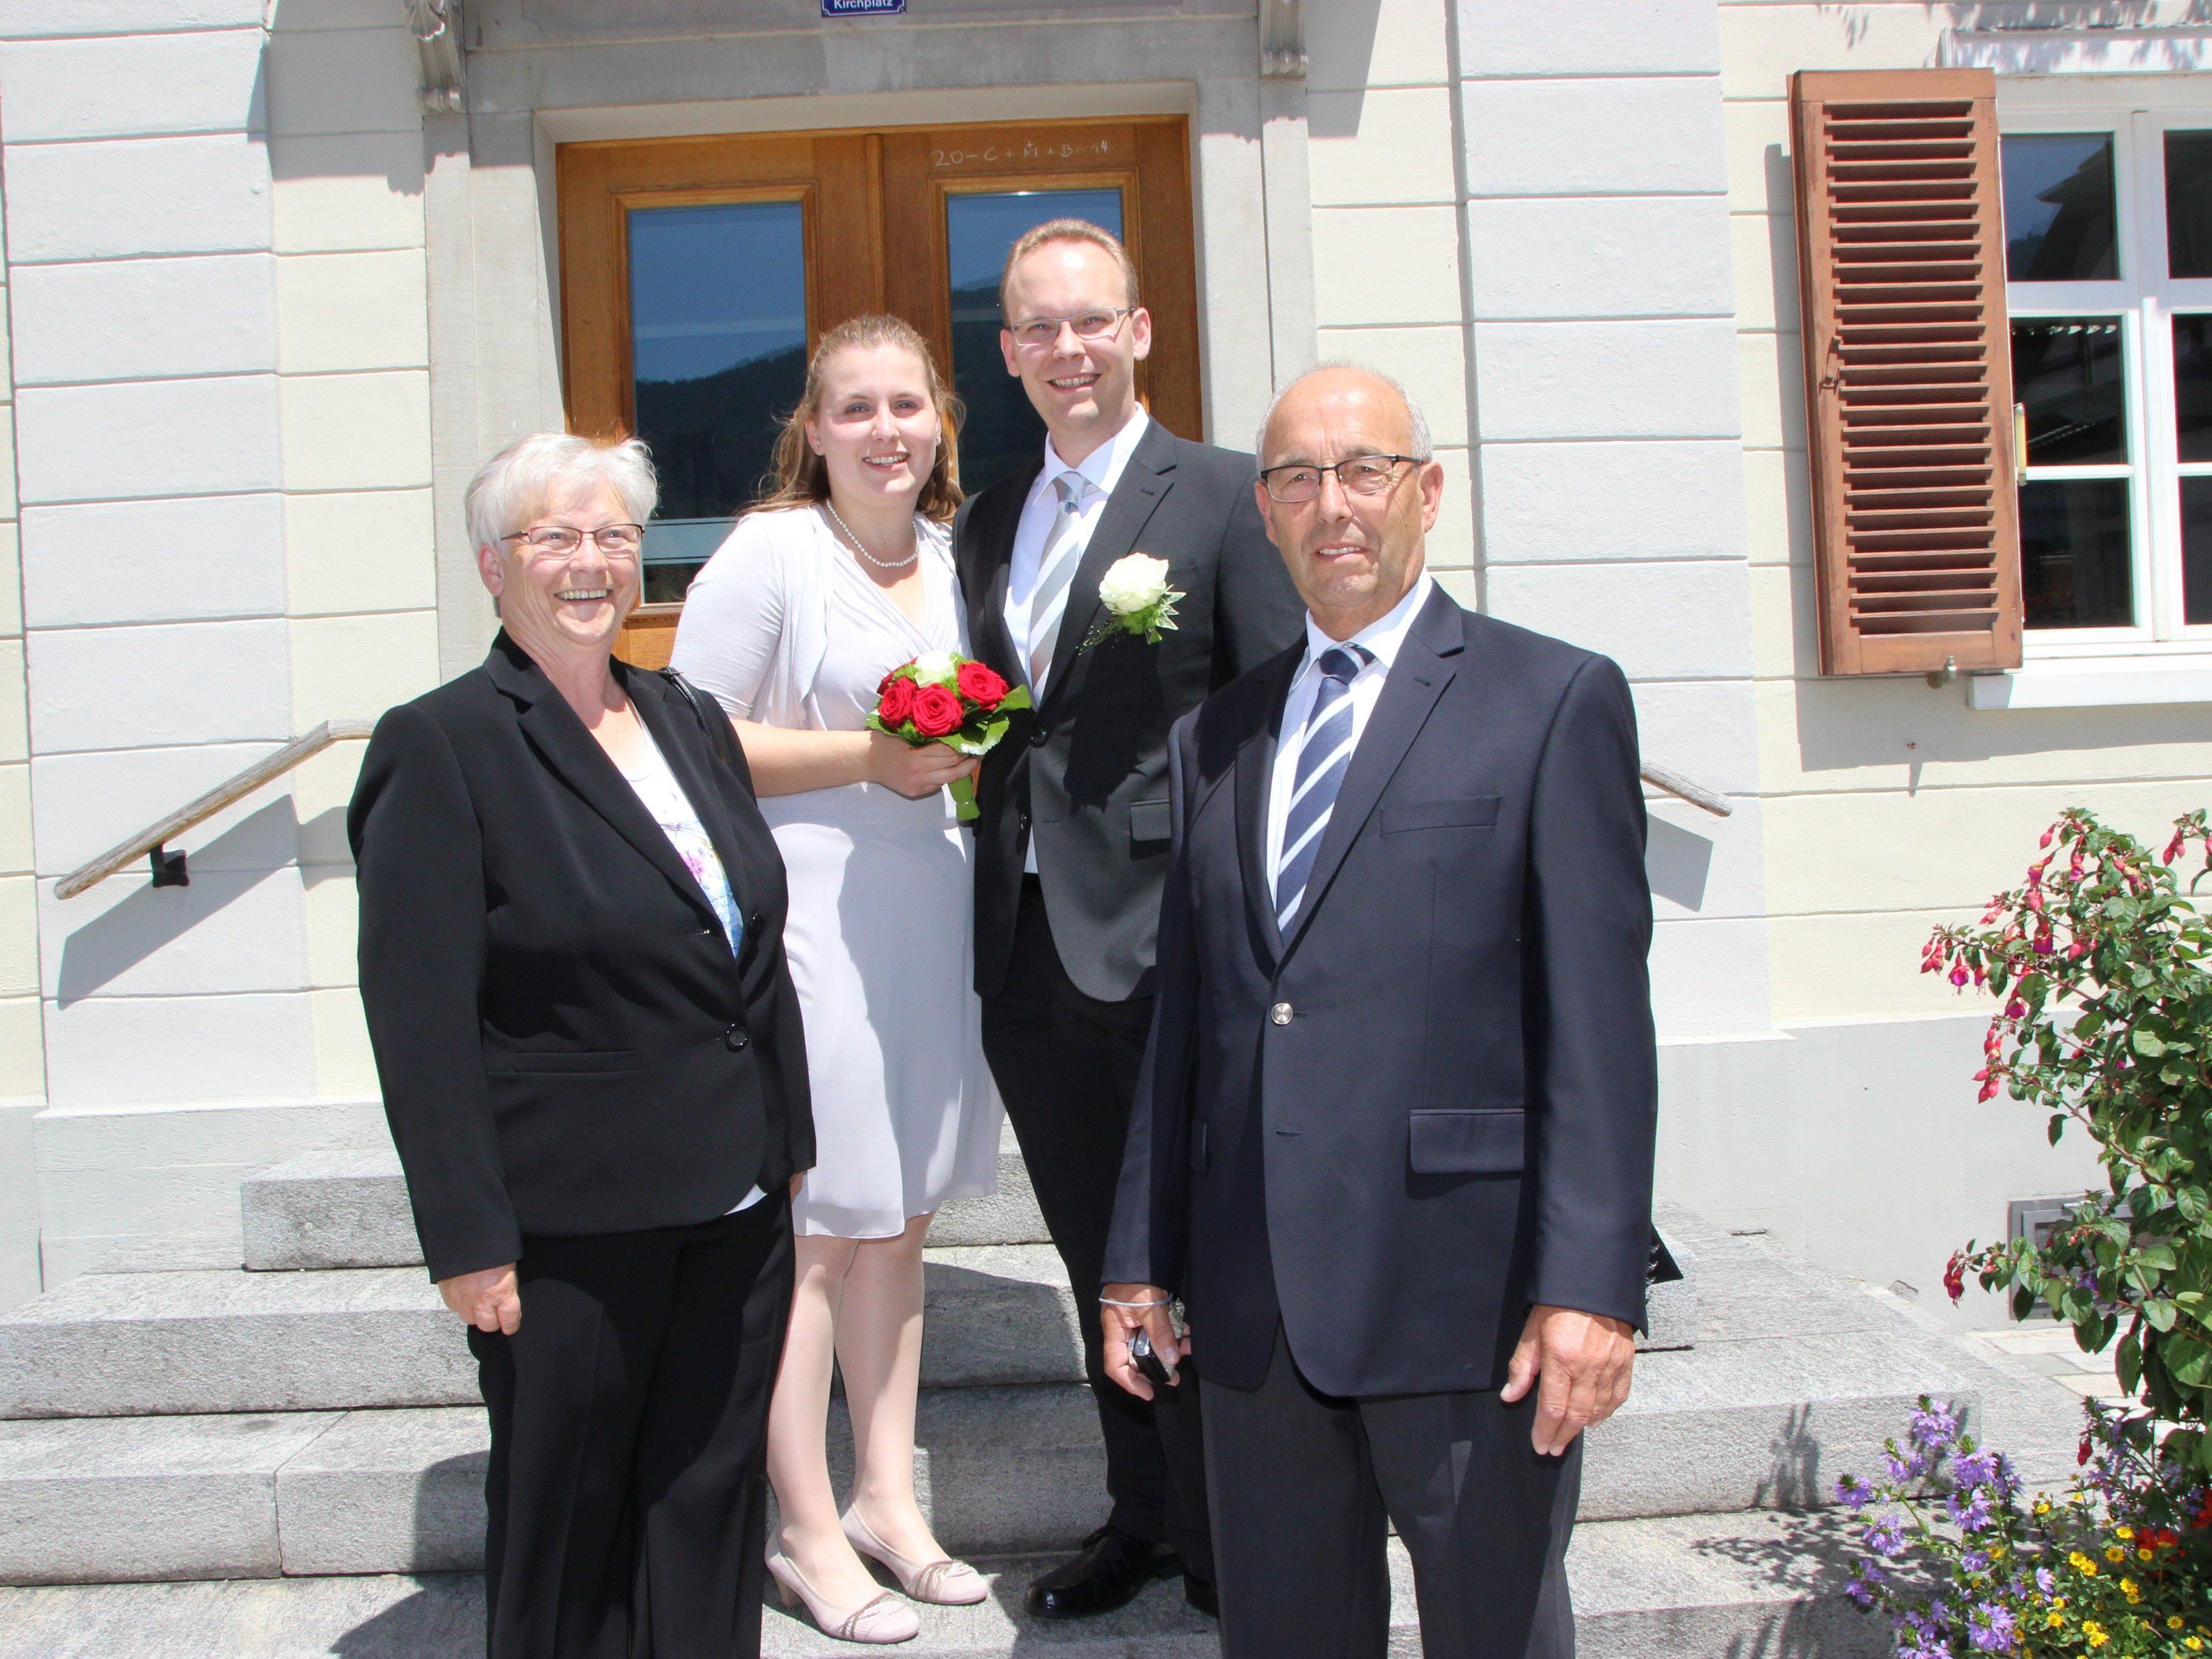 Andrea Rieck und Thomas Ohnewald haben sich am 10. Juli vermählt. Die Bräutgamseltern stehen dem Paar gerne zur Seite.